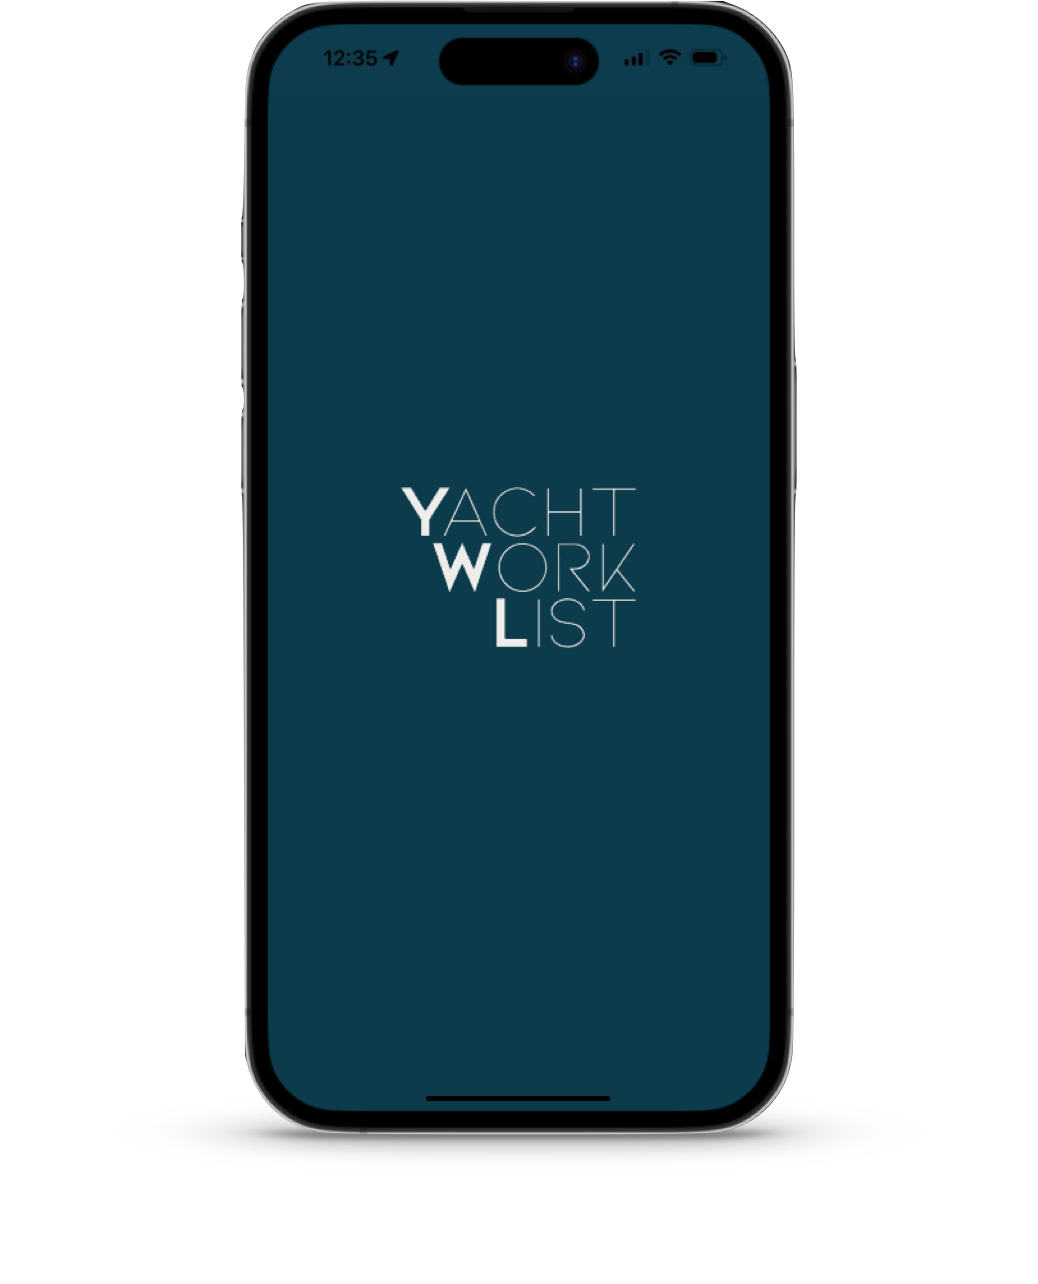 Yacht Work List App Mock-up